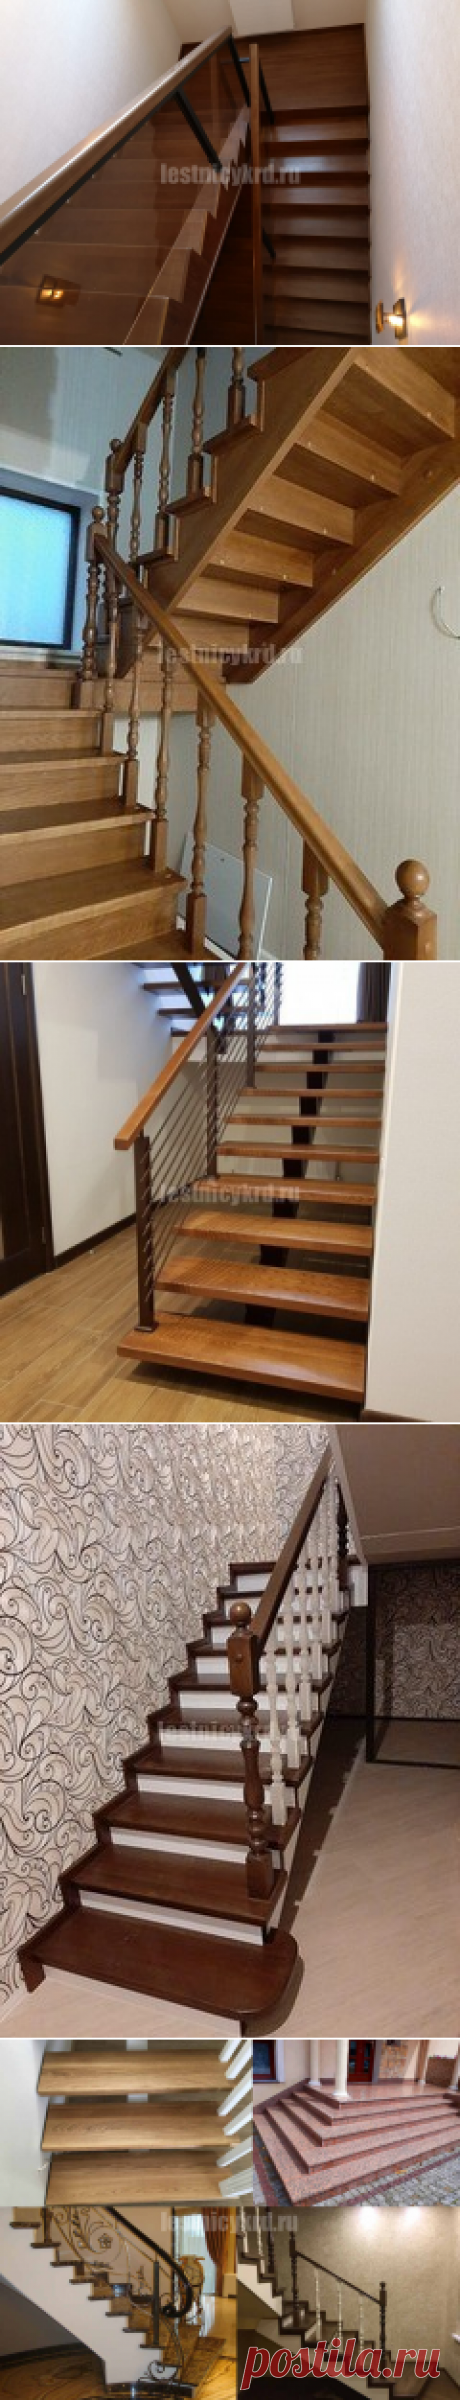 Лестницы на заказ из дерева, металла и стекла - Лестницы Краснодара